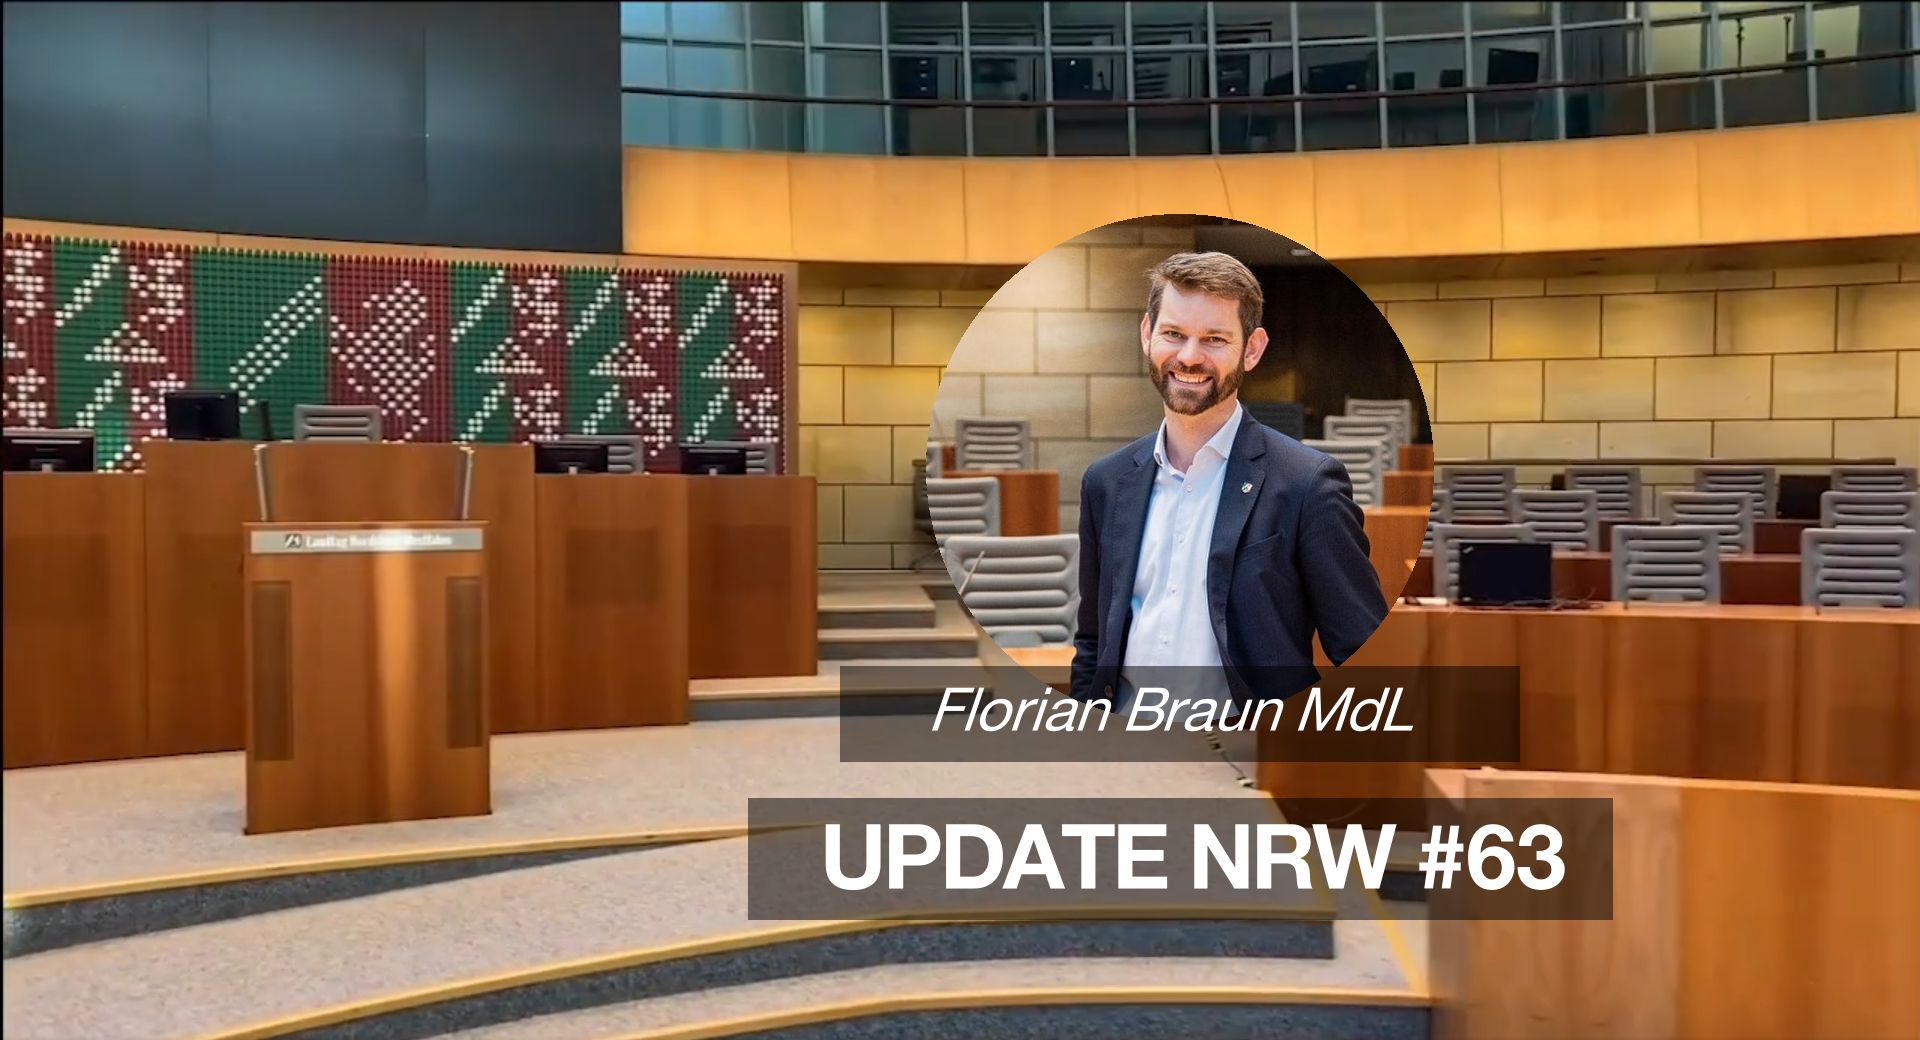 Florian Braun MdL: Update NRW #63